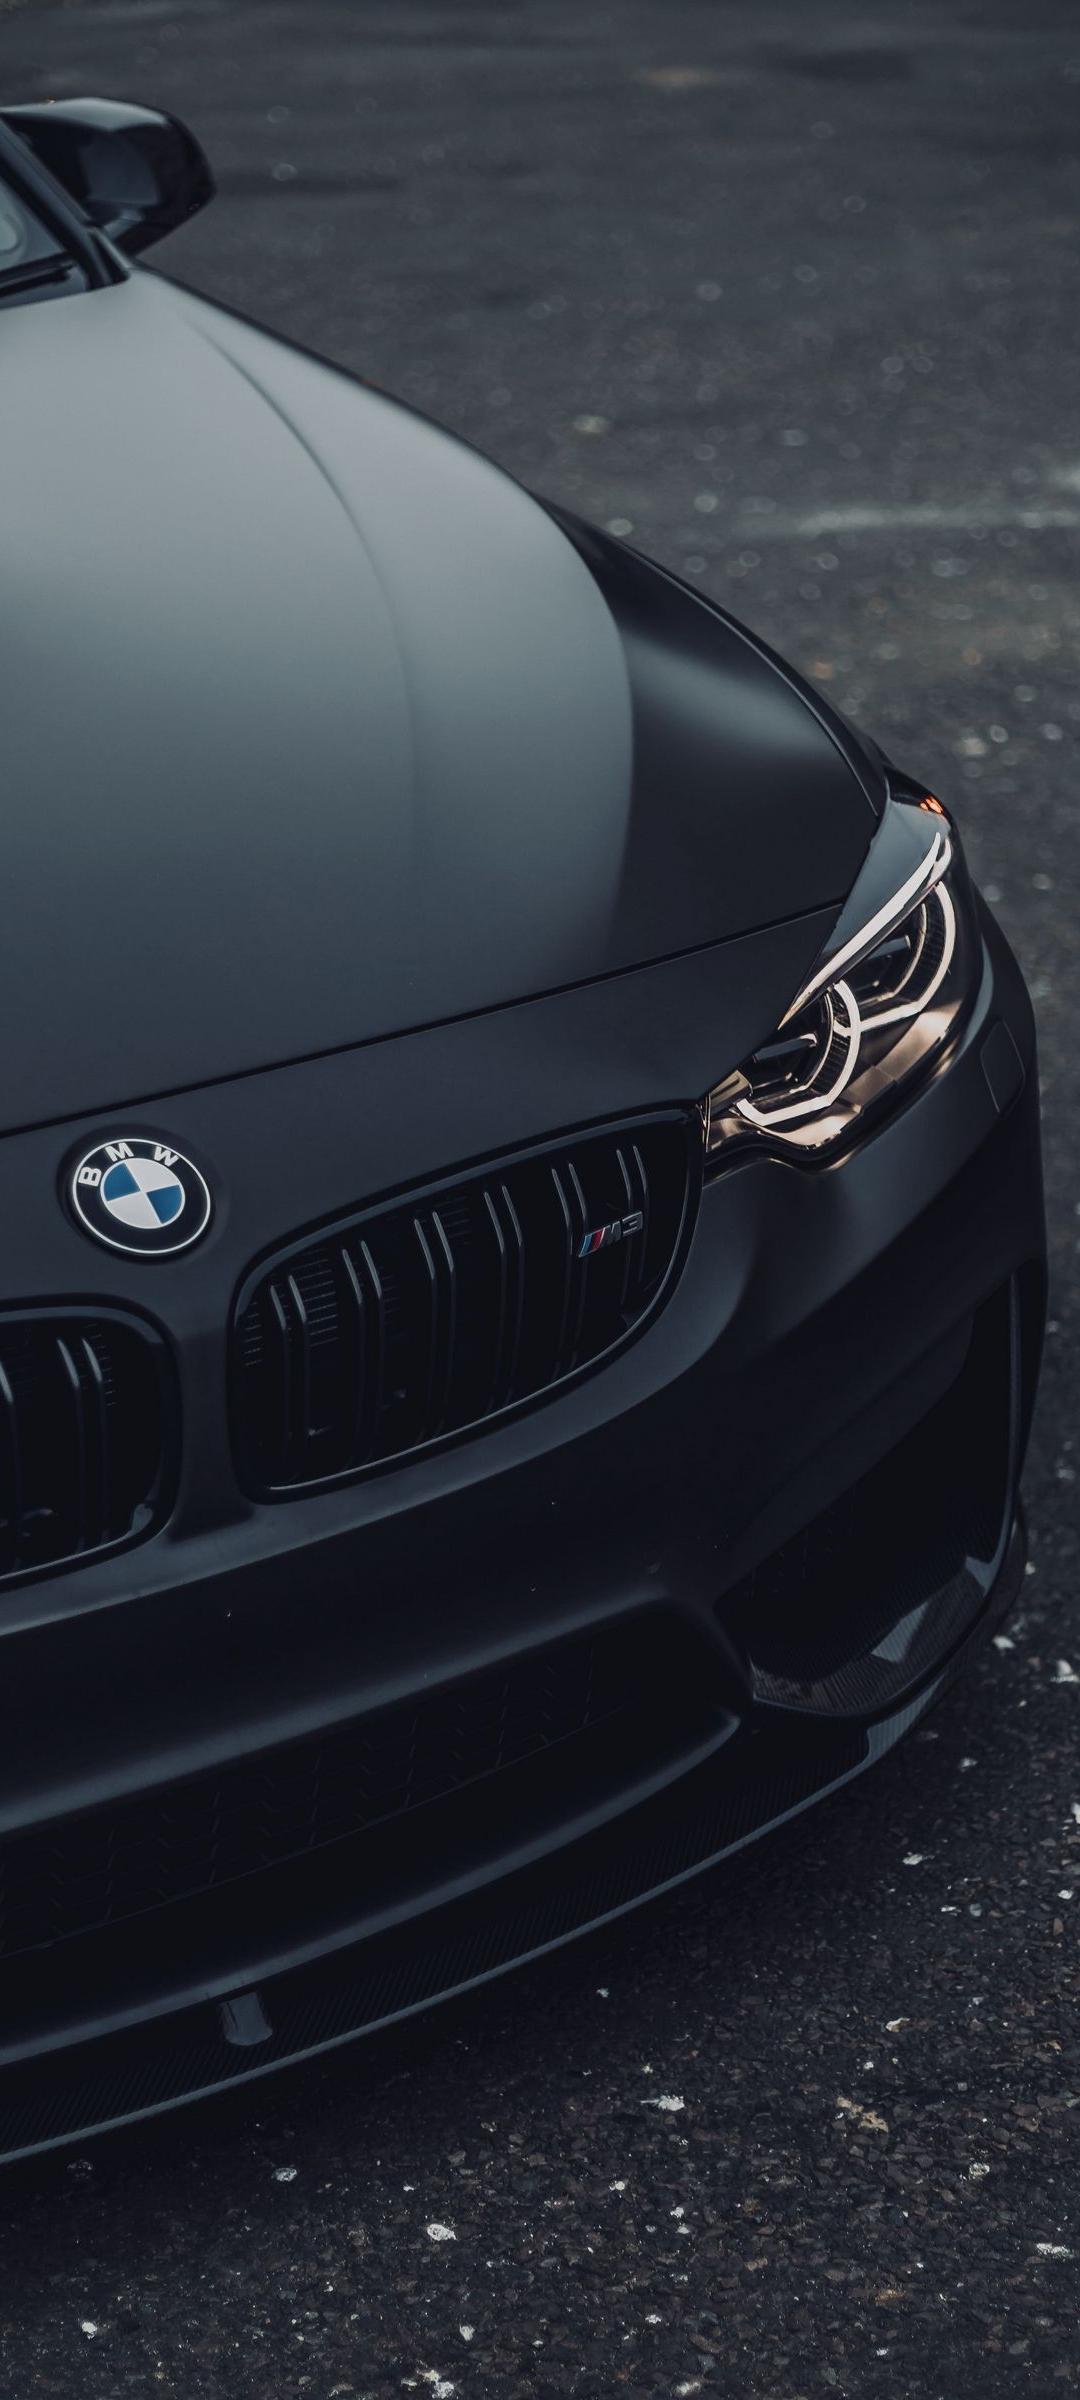 BMW Black Car Wallpaper